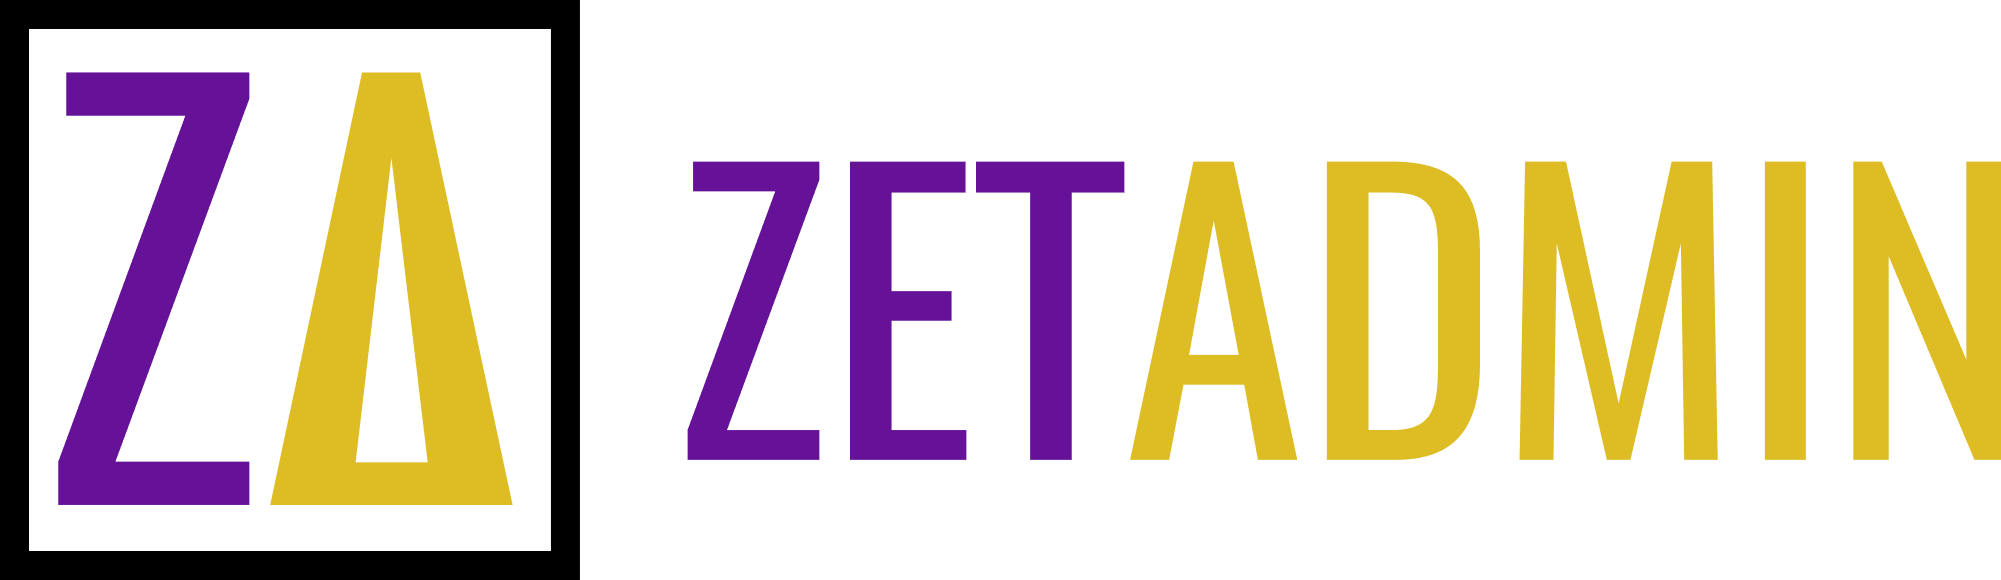 Zeta Ret Zetadmin Logo